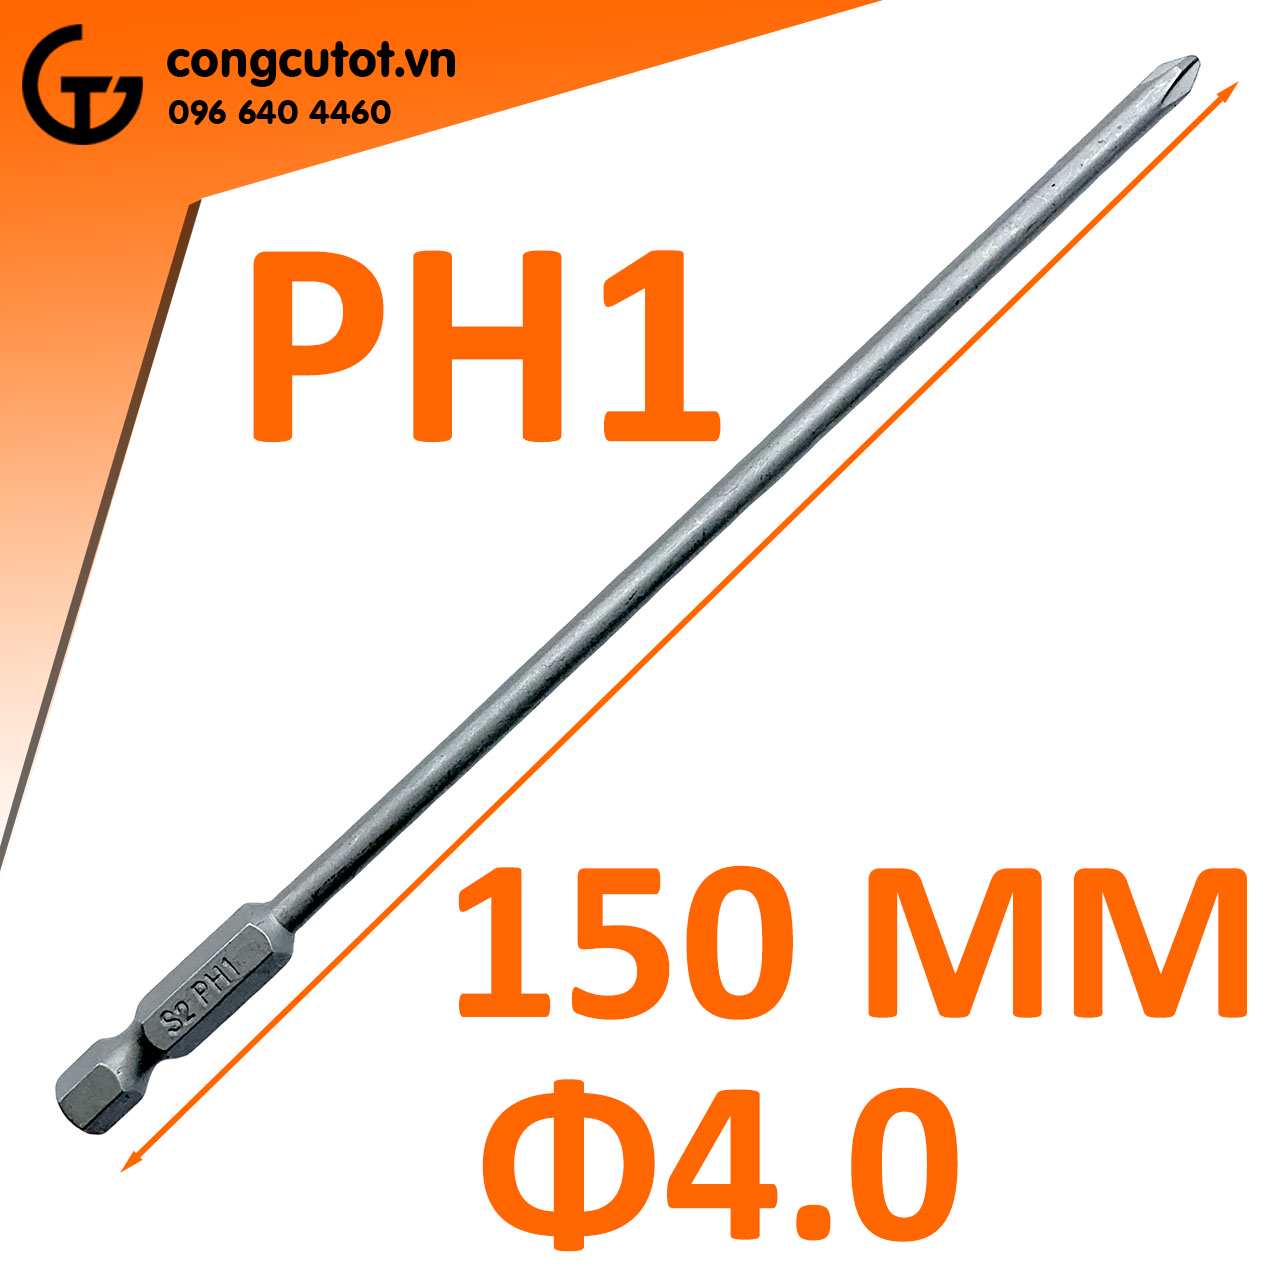 Đầu bắt vít 4 cạnh PH1 Φ4.0 dài 150mm chuôi lục thép S2 được ứng dụng trong nhiều ngành chế tạo, sửa chữa và bảo trì